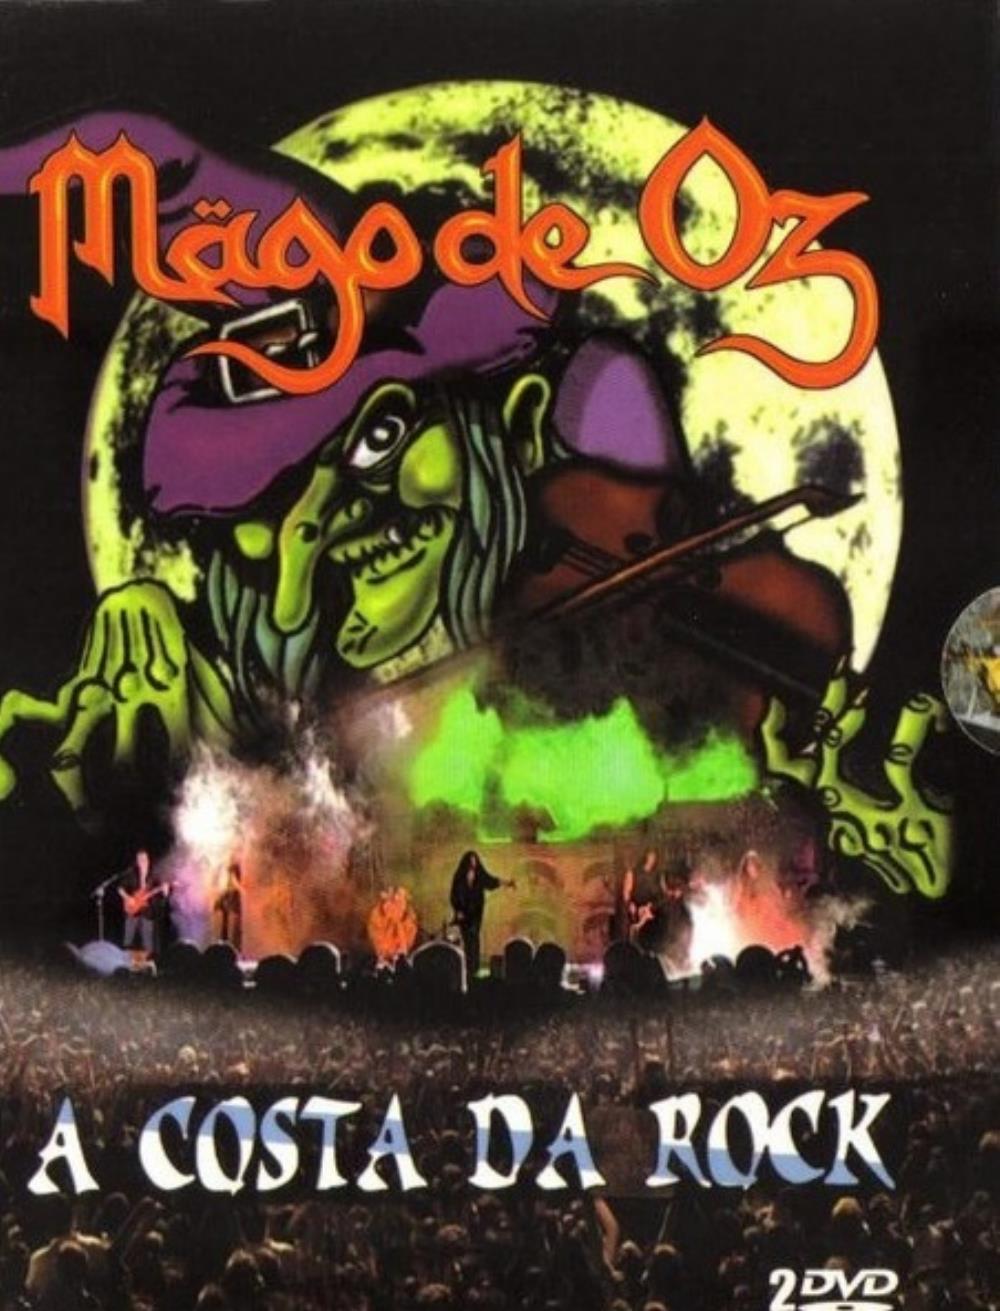 Mgo De Oz A Costa Da Rock album cover